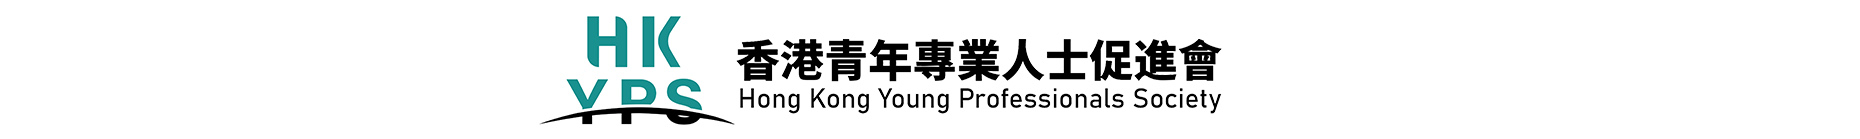 香港青年專業人士促進會